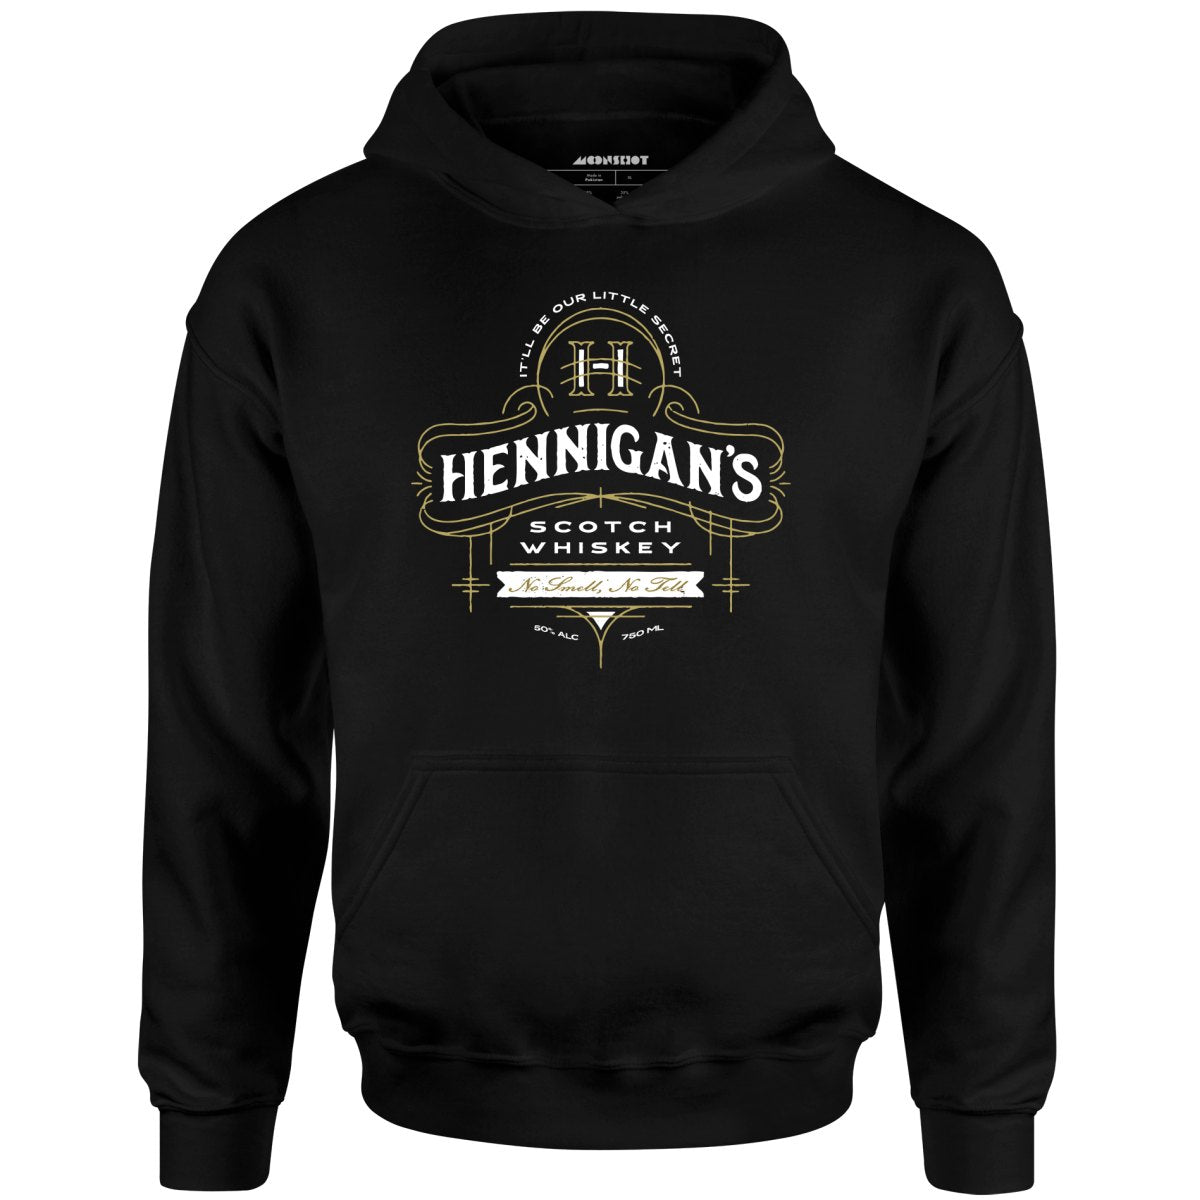 Hennigan's Scotch Whiskey - Unisex Hoodie